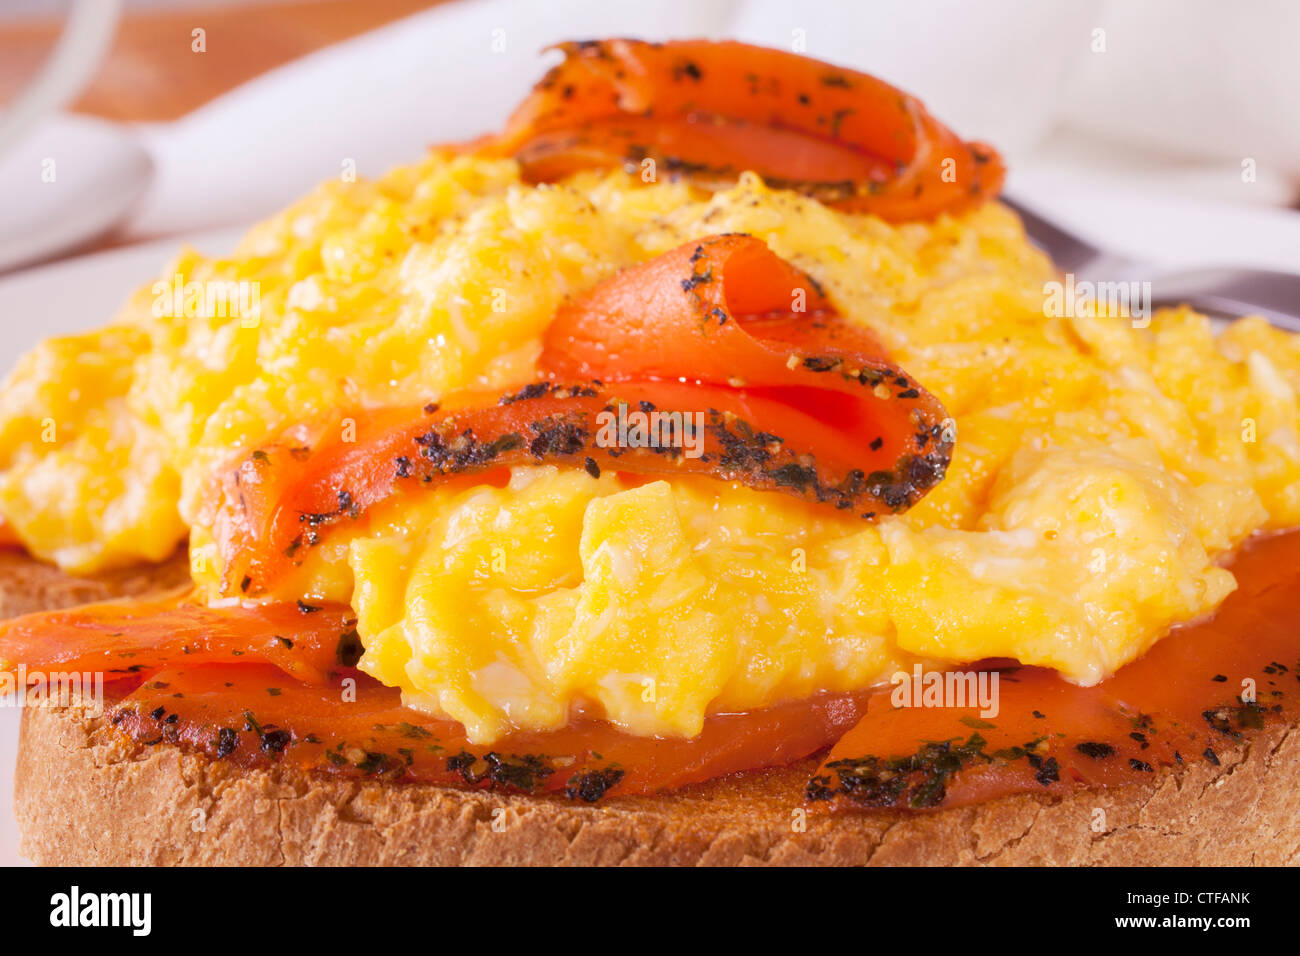 Sazonado de salmón ahumado con huevos revueltos sobre una tostada. Foto de stock